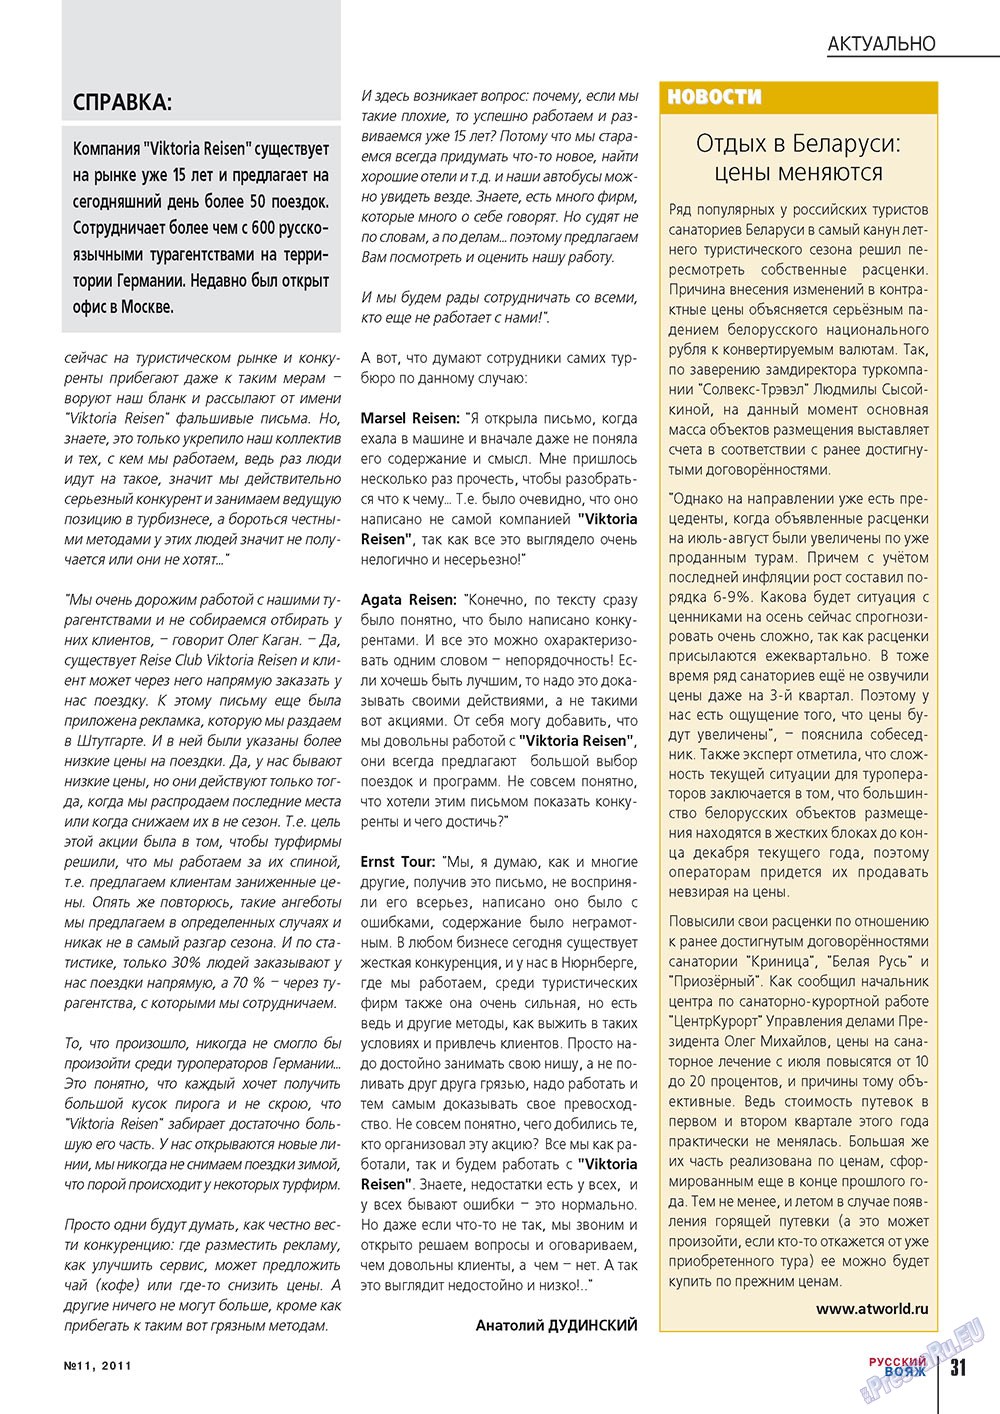 Русский вояж (журнал). 2011 год, номер 11, стр. 31